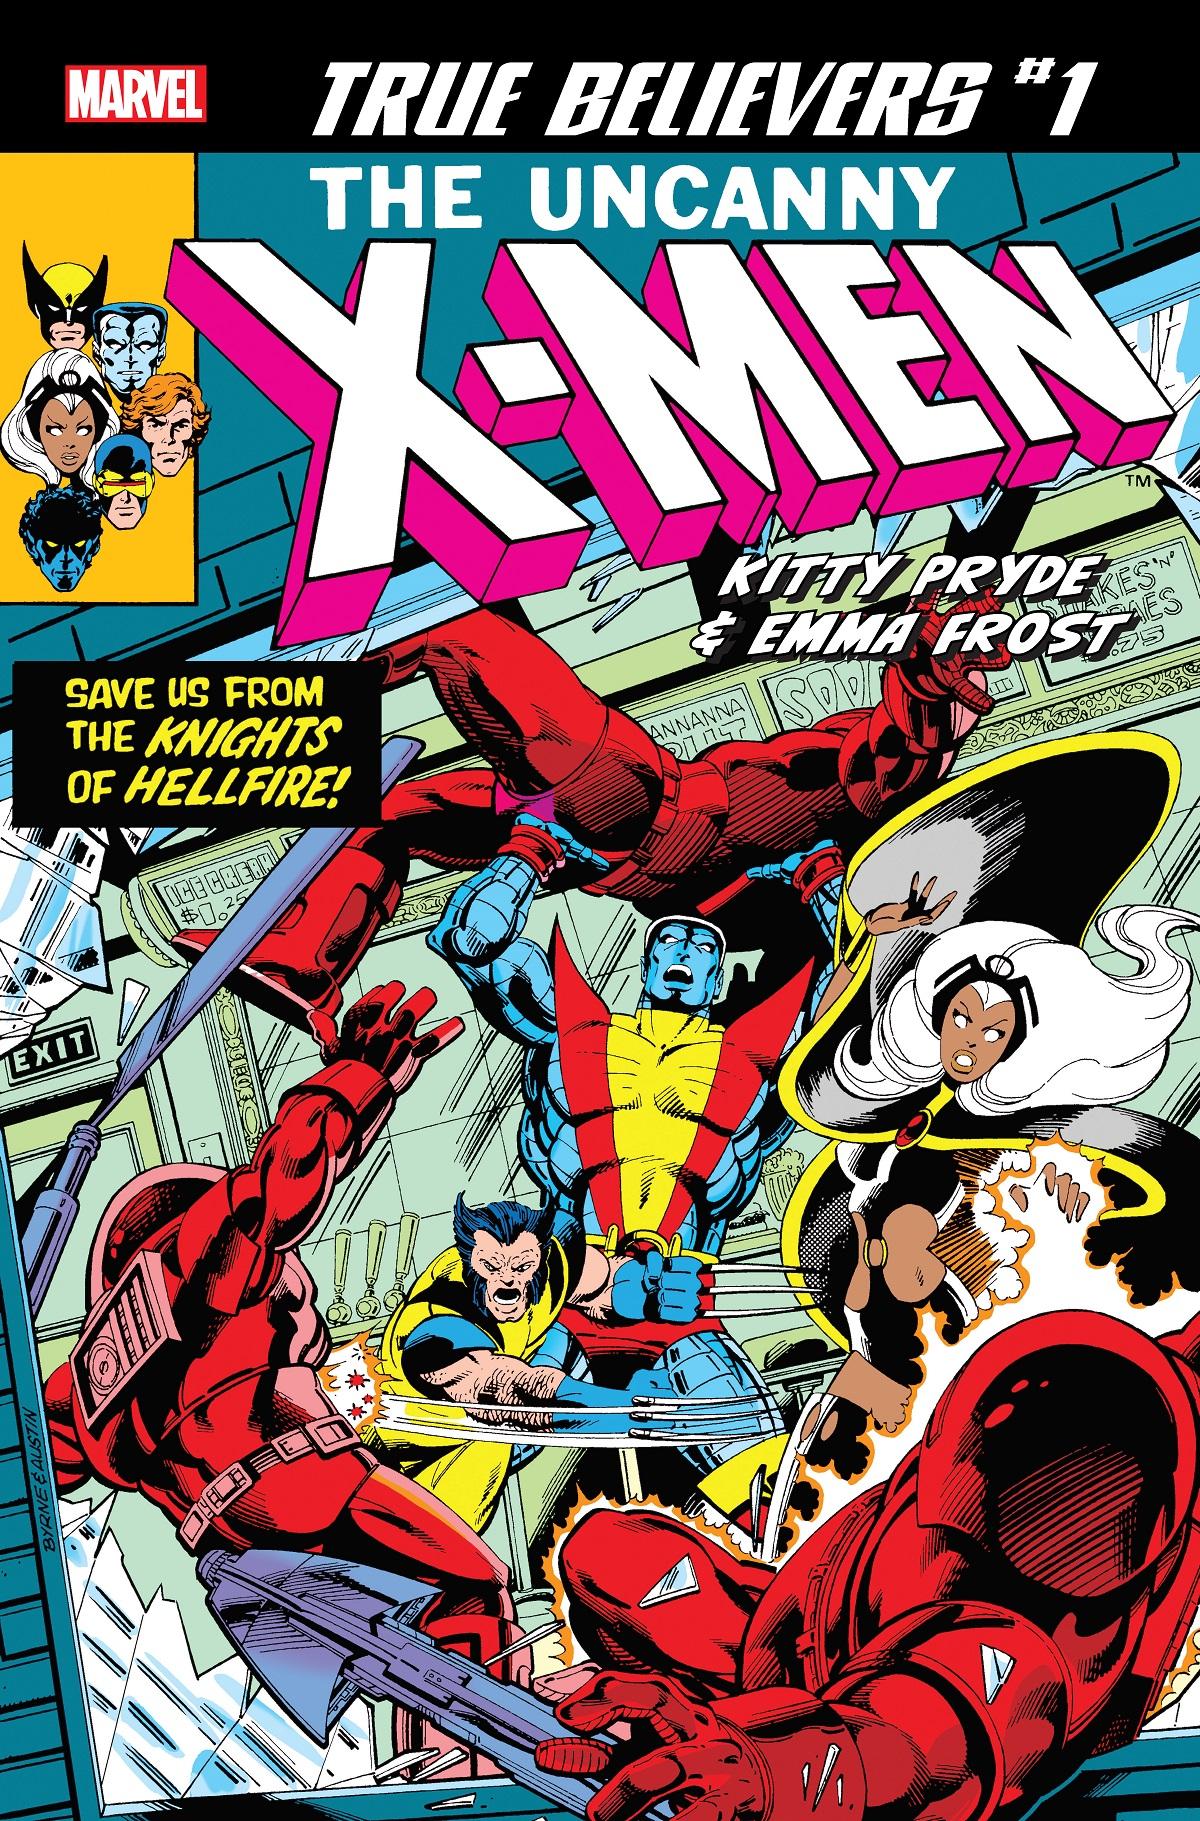 True Believers: X-Men - Kitty Pryde & Emma Frost Vol. 1 #1